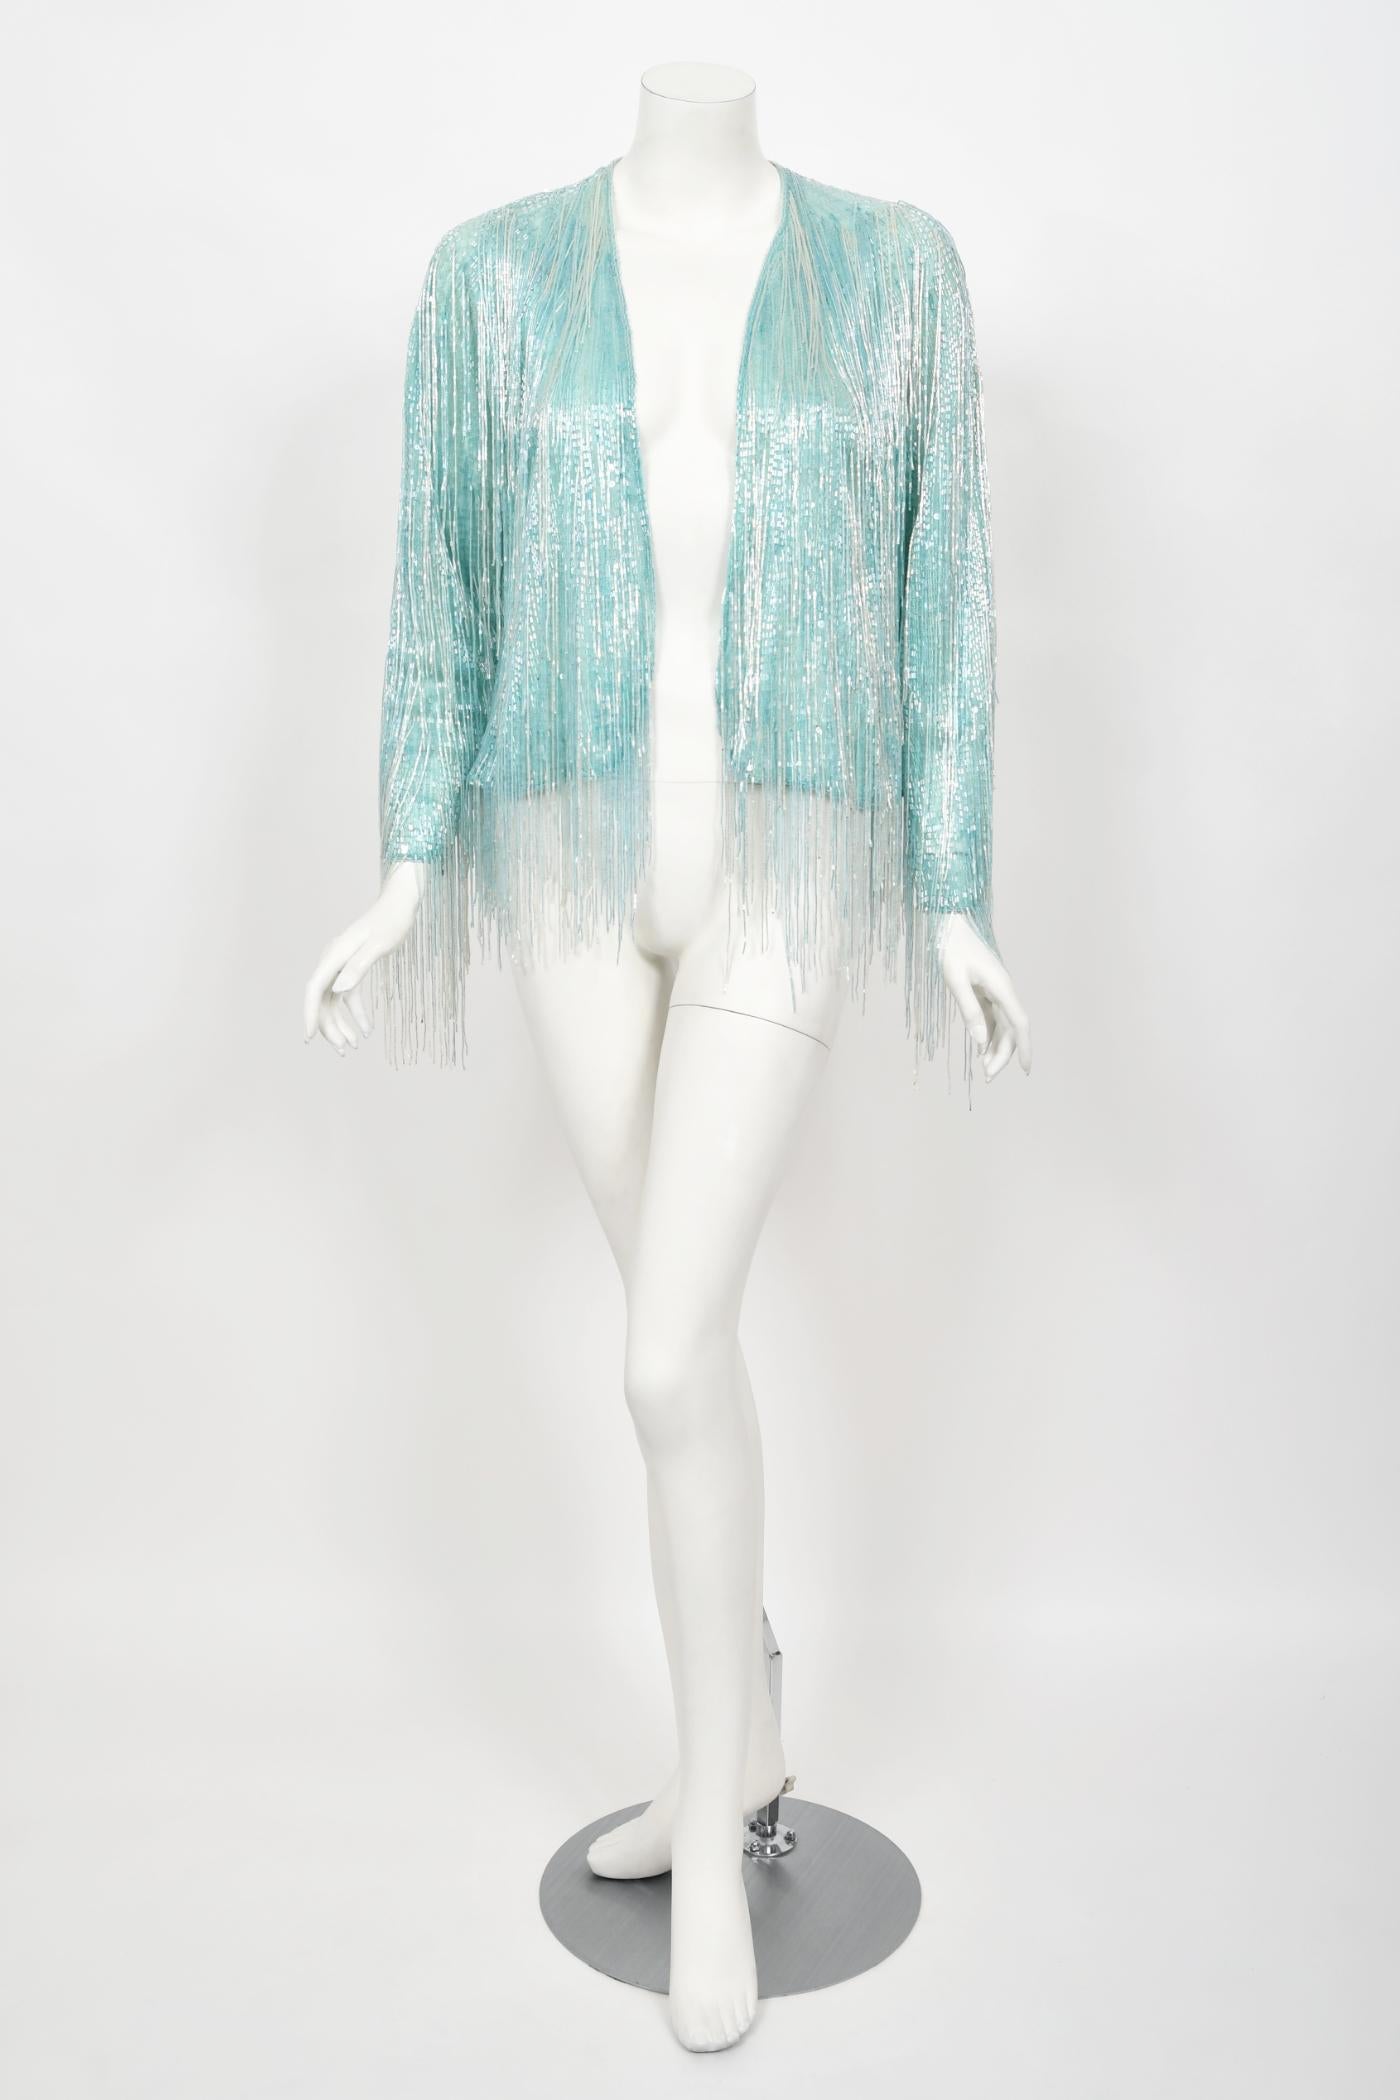 Cette veste cardigan en soie semi-transparente bleu glacier de Halston couture, datant du milieu des années 1970, est véritablement épique et immédiatement reconnaissable. Halston a révolutionné la façon dont les femmes s'habillent et est l'un des